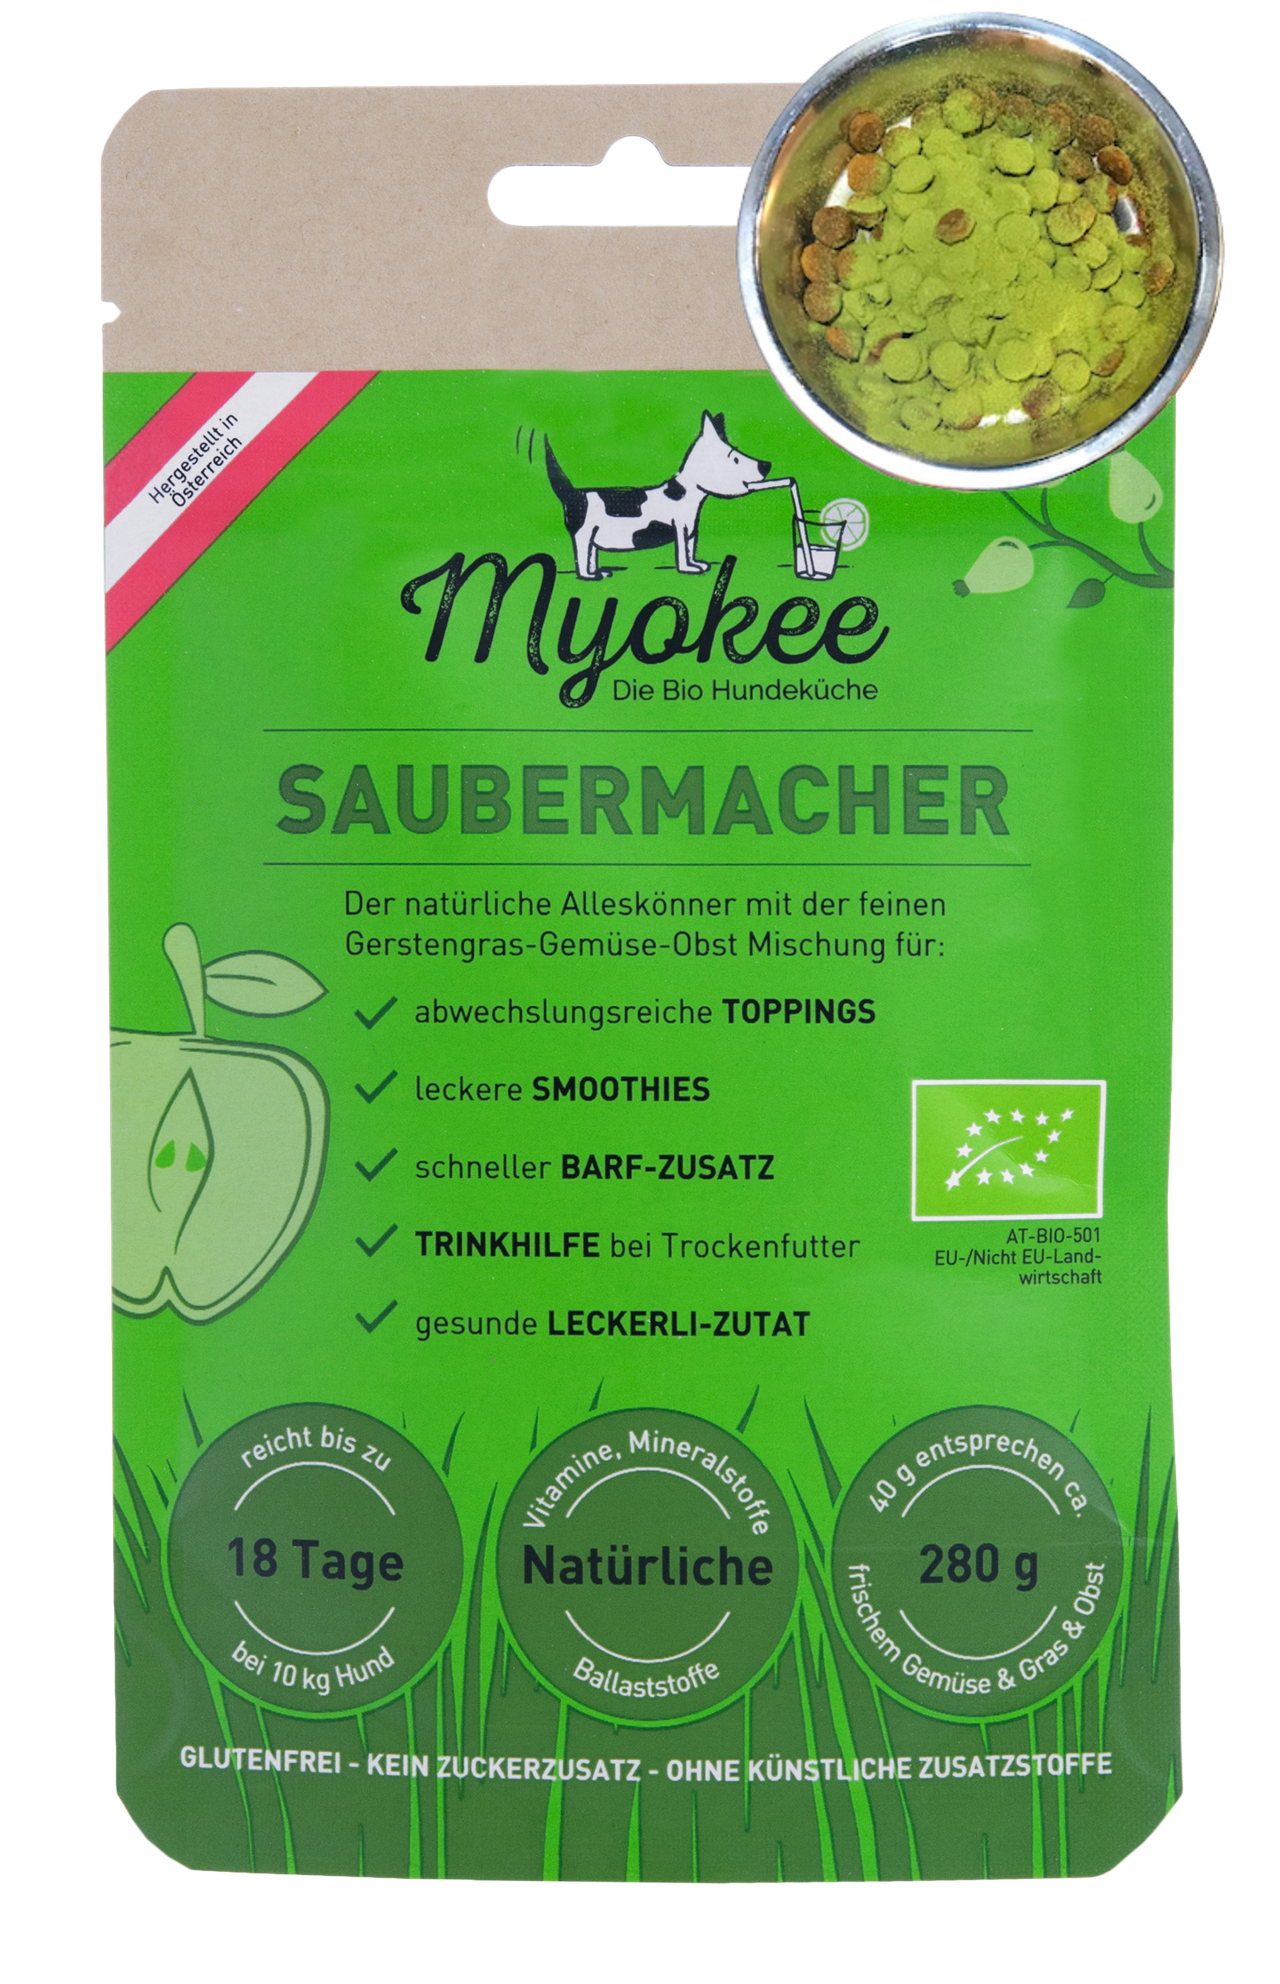 MYOKEE - Die Bio Hundeküche Produkt-Beispiele SAUBERMACHER